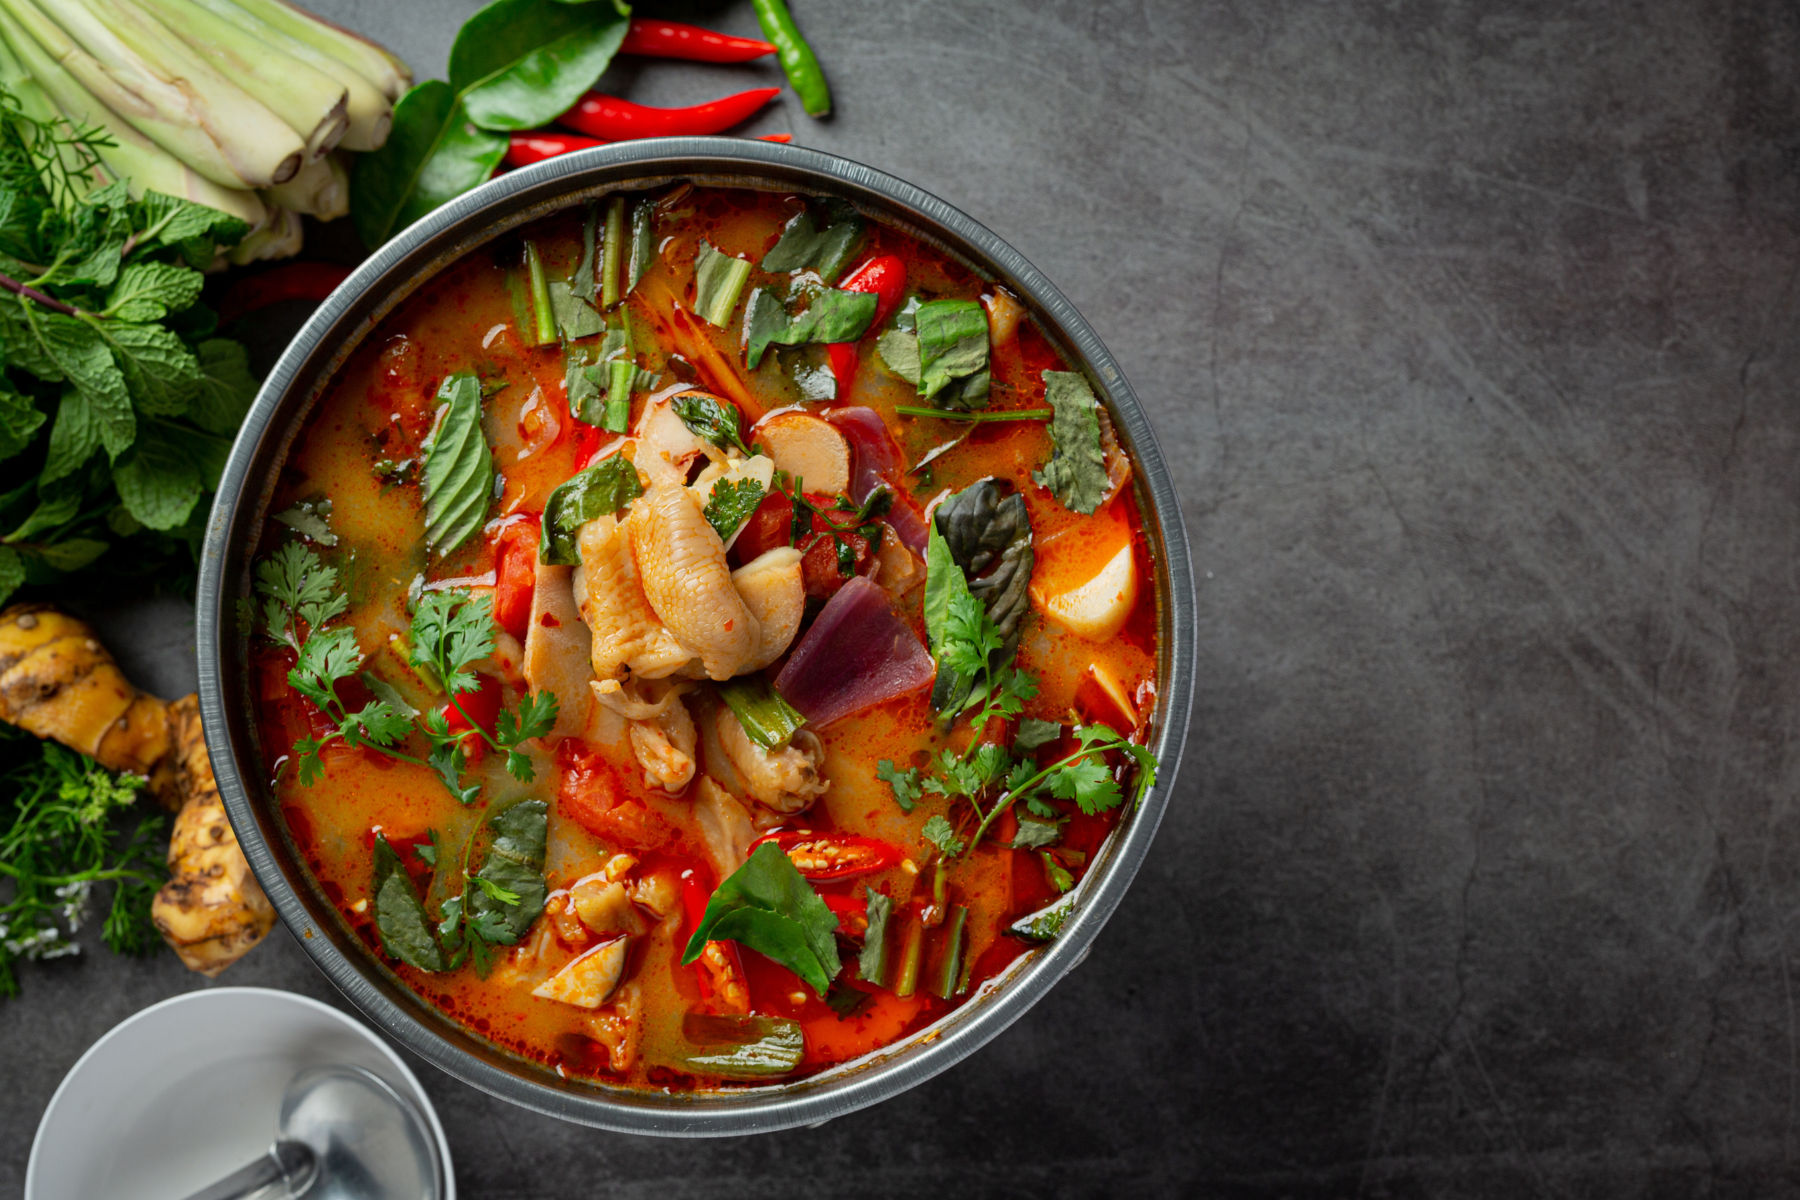 Chicken soup: इन बीमारियों के लिए लाभकारी है चिकन सूप, जानें इसके फायदे